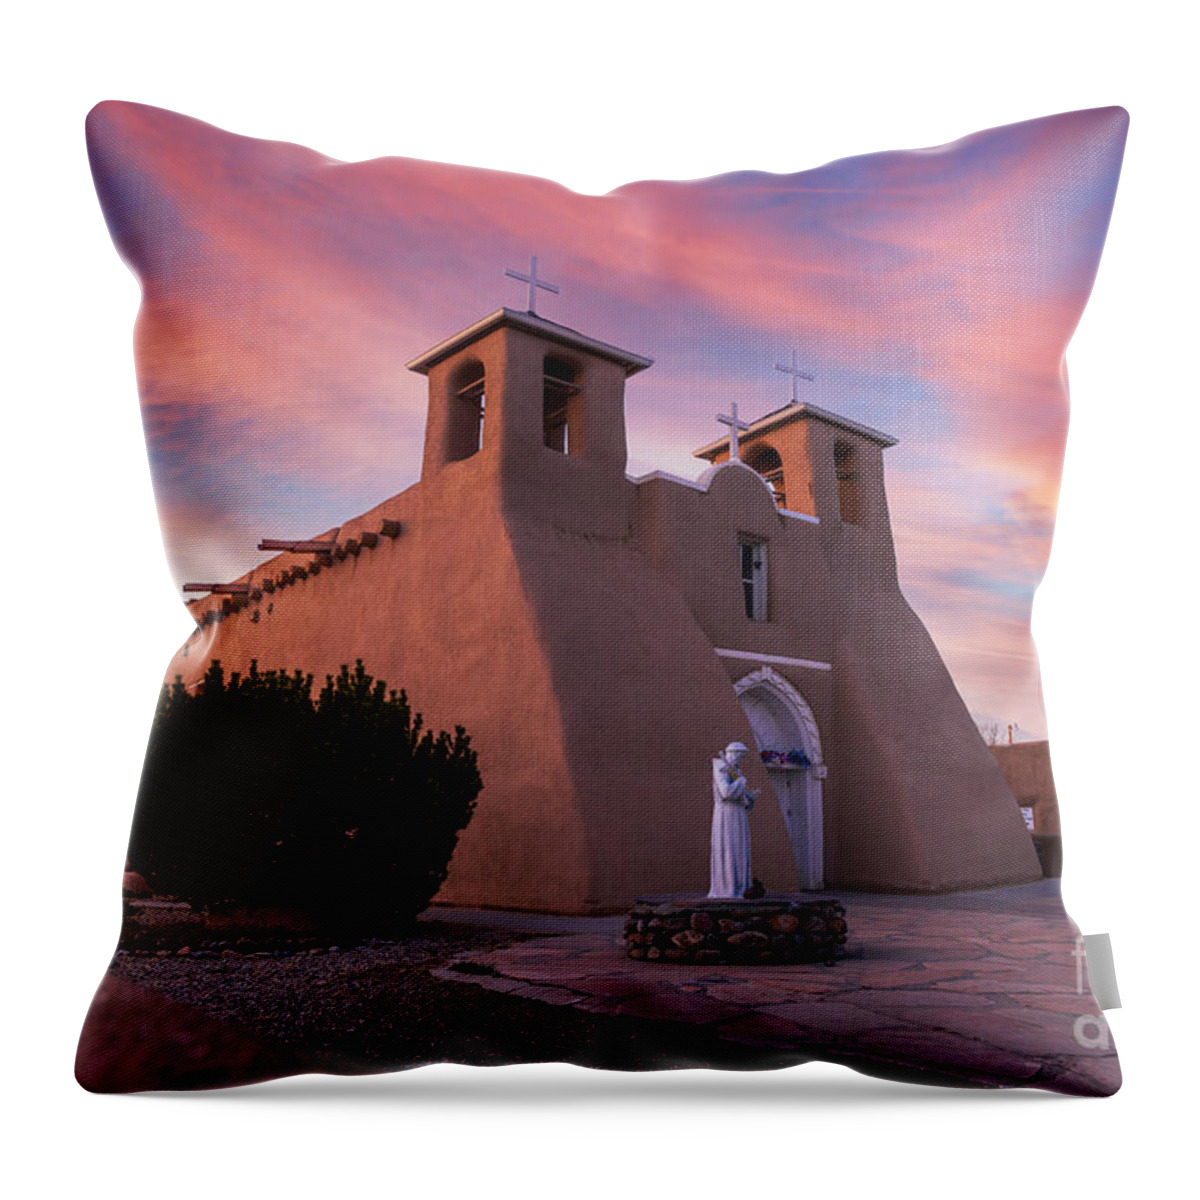 Taos Throw Pillow featuring the photograph Sunset with the San Francisco de Asis Church by Elijah Rael